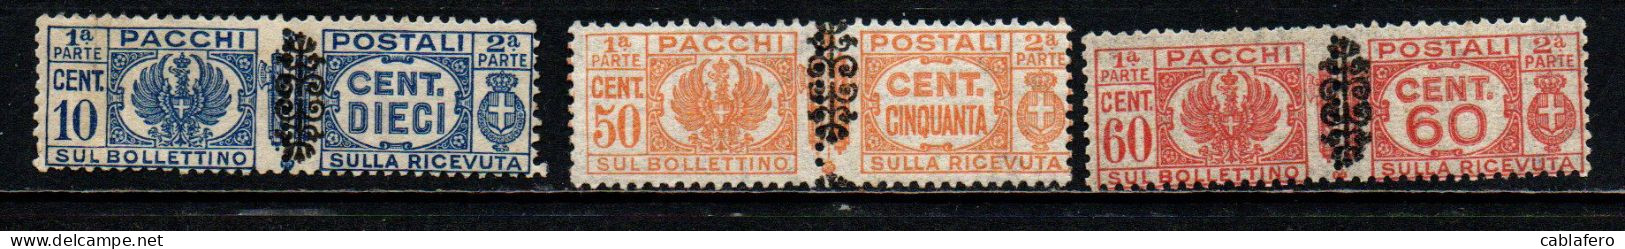 ITALIA LUOGOTENENZA - 1945 - STEMMA E CIFRA CON FREGIO NERO SUI FASCI - MNH - Paketmarken